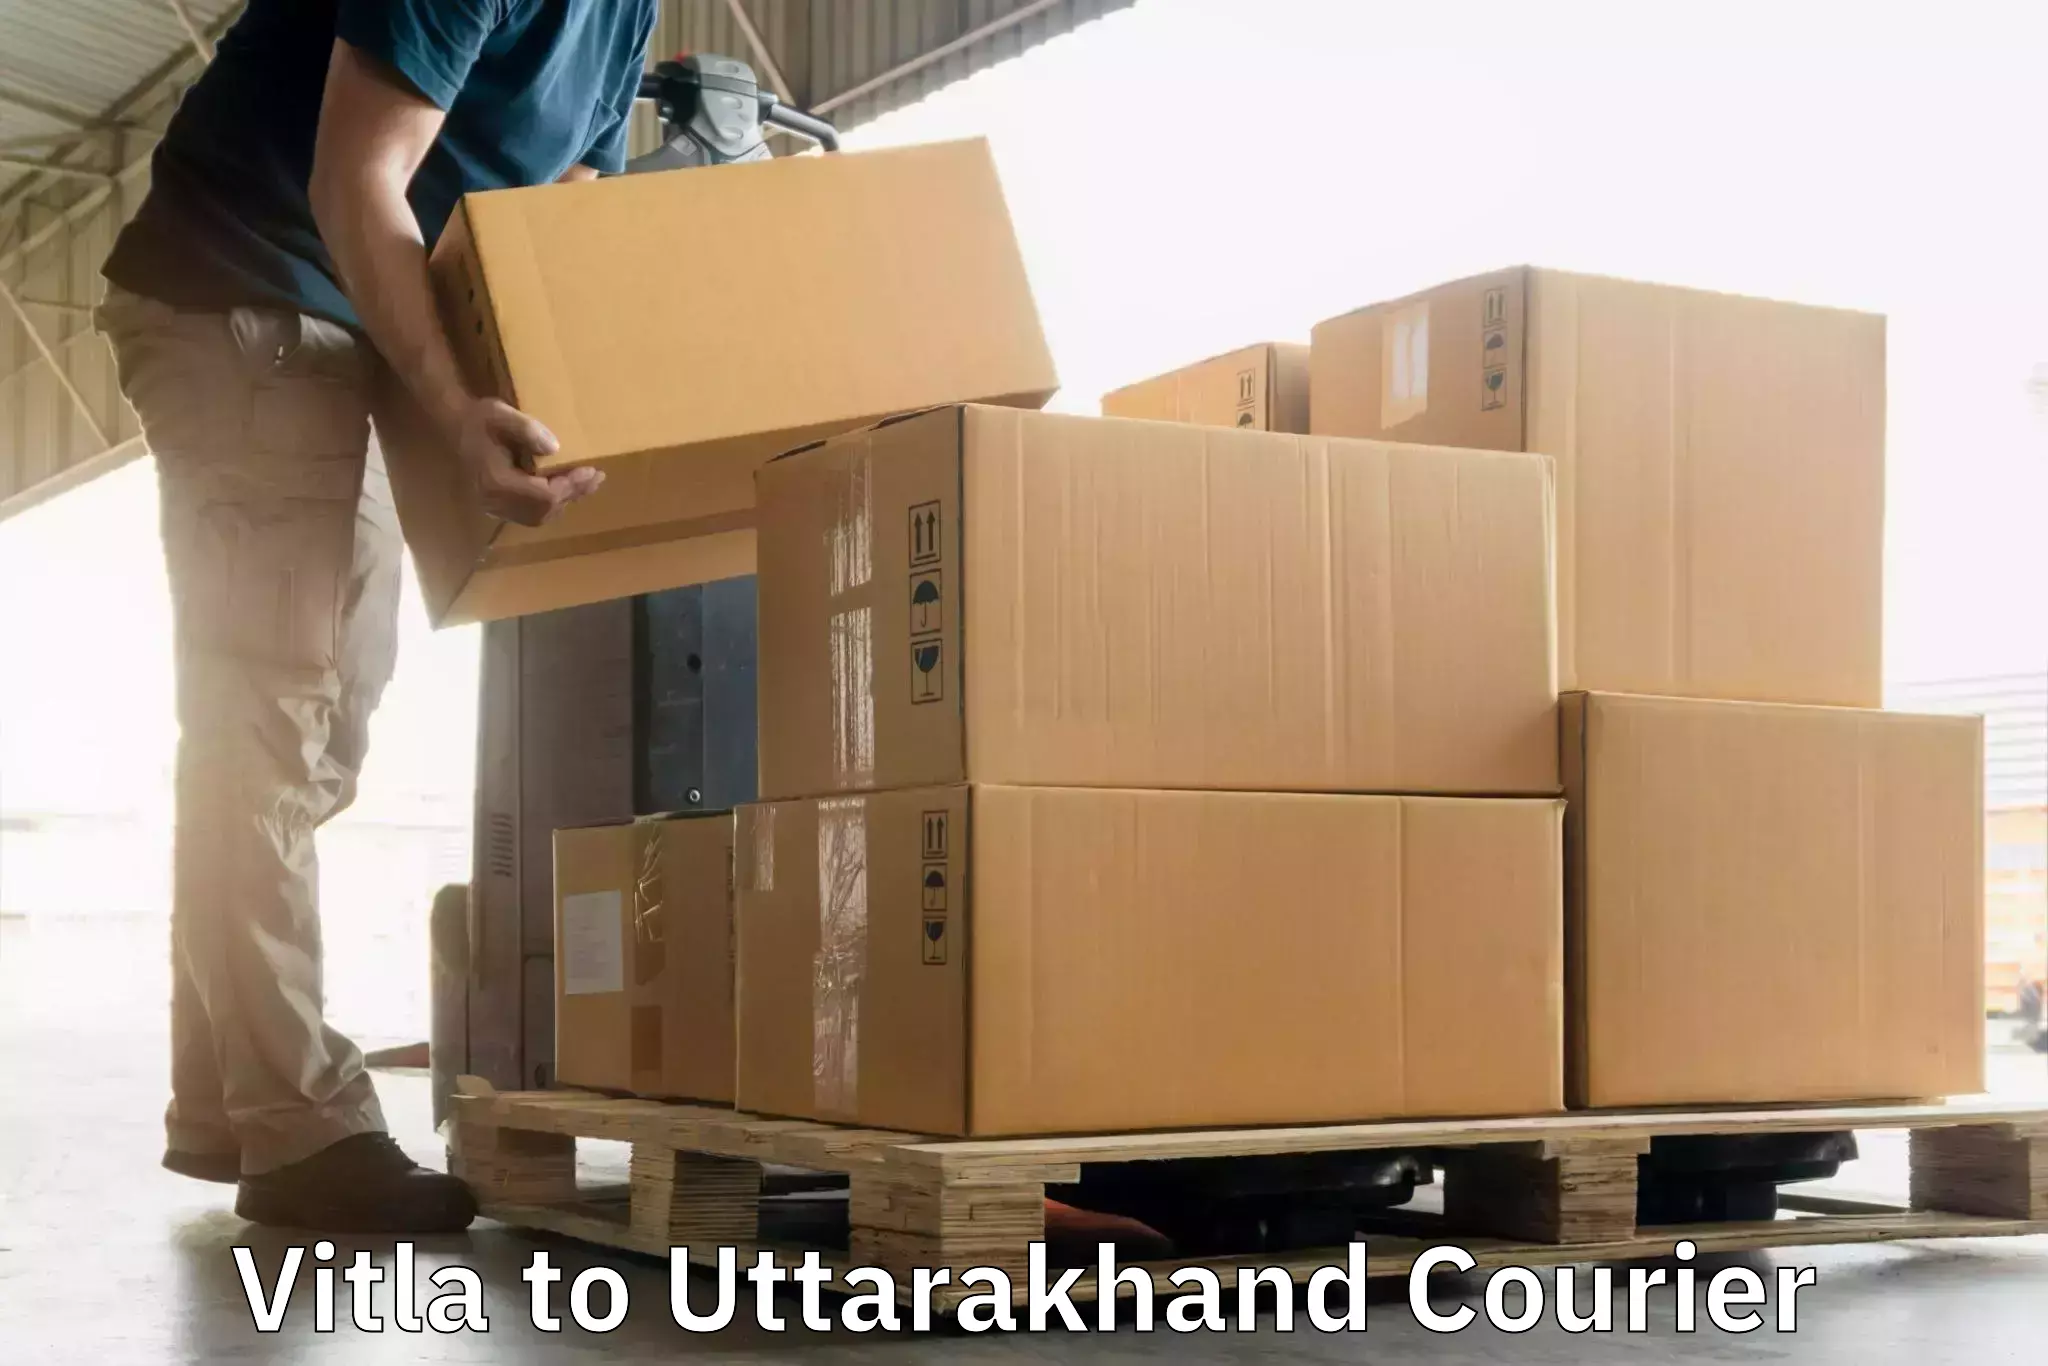 High-capacity shipping options Vitla to Karnaprayag